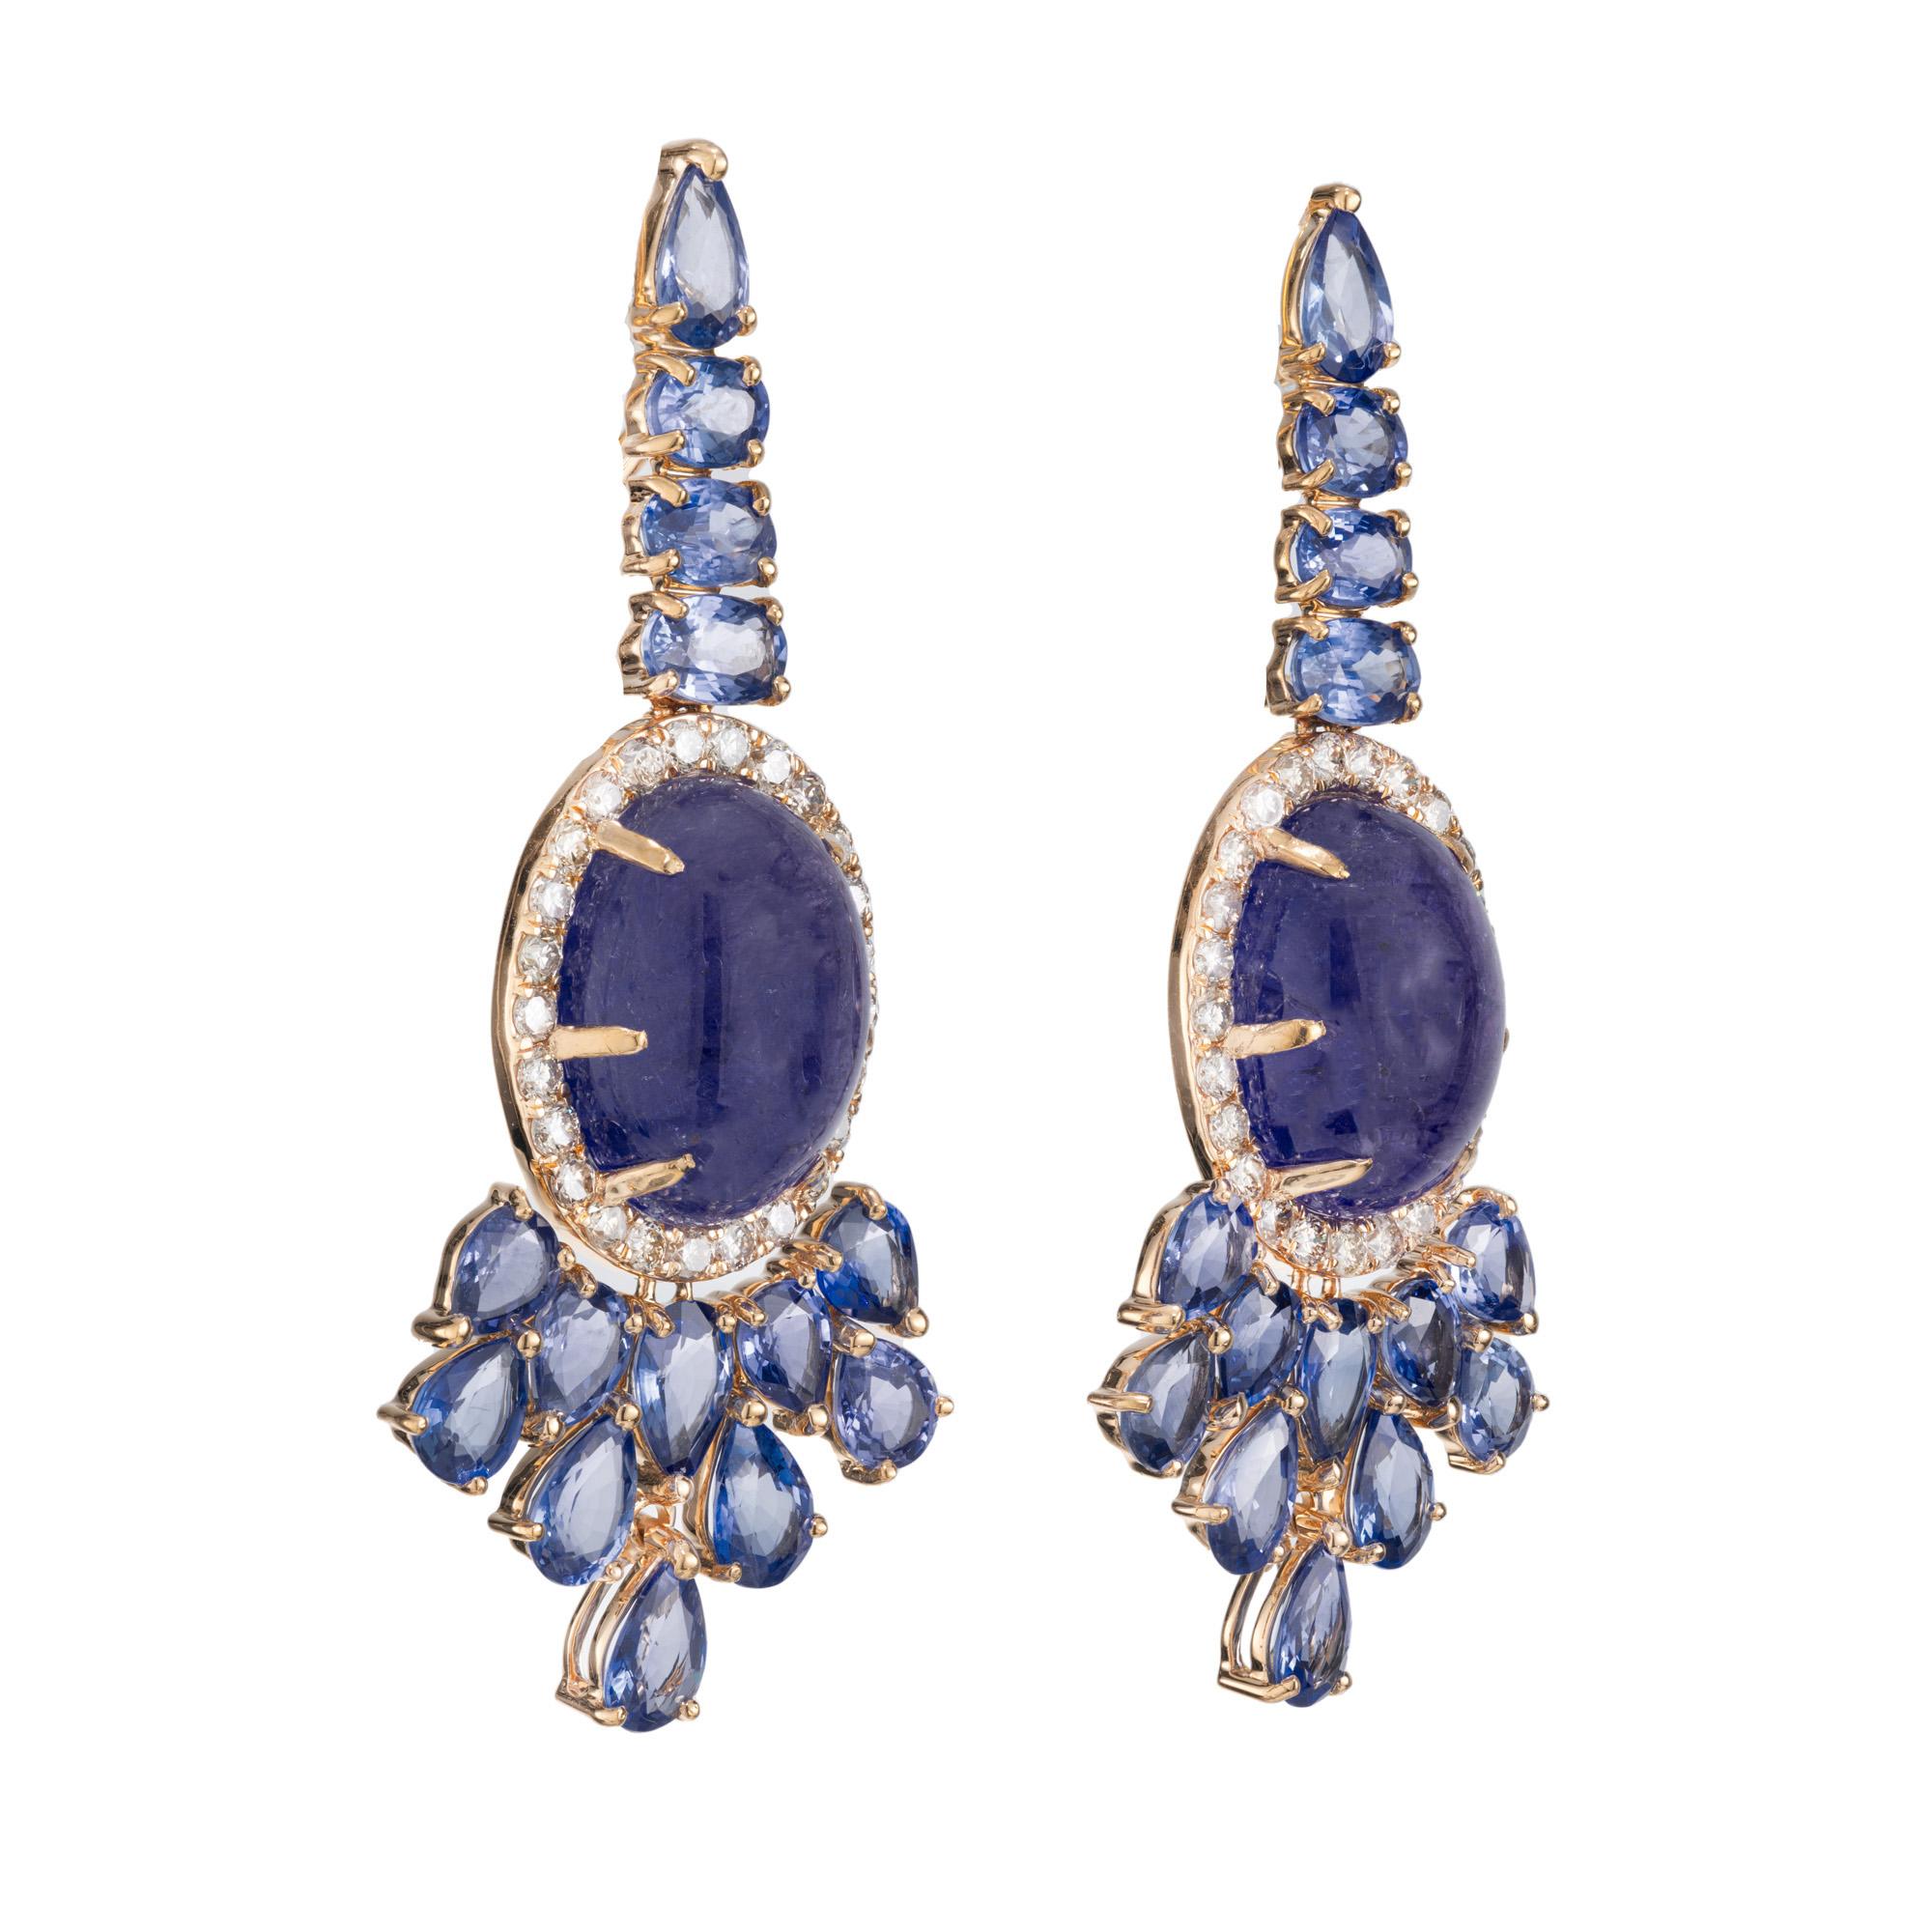 Boucles d'oreilles pendantes spectaculaires en tanzanite, saphir et diamant. 2 pierres précieuses cabochons ovales de tanzanite d'une valeur totale de 12,00cts, connues pour leur exquise teinte bleu-violet, sont la pièce maîtresse de ces boucles